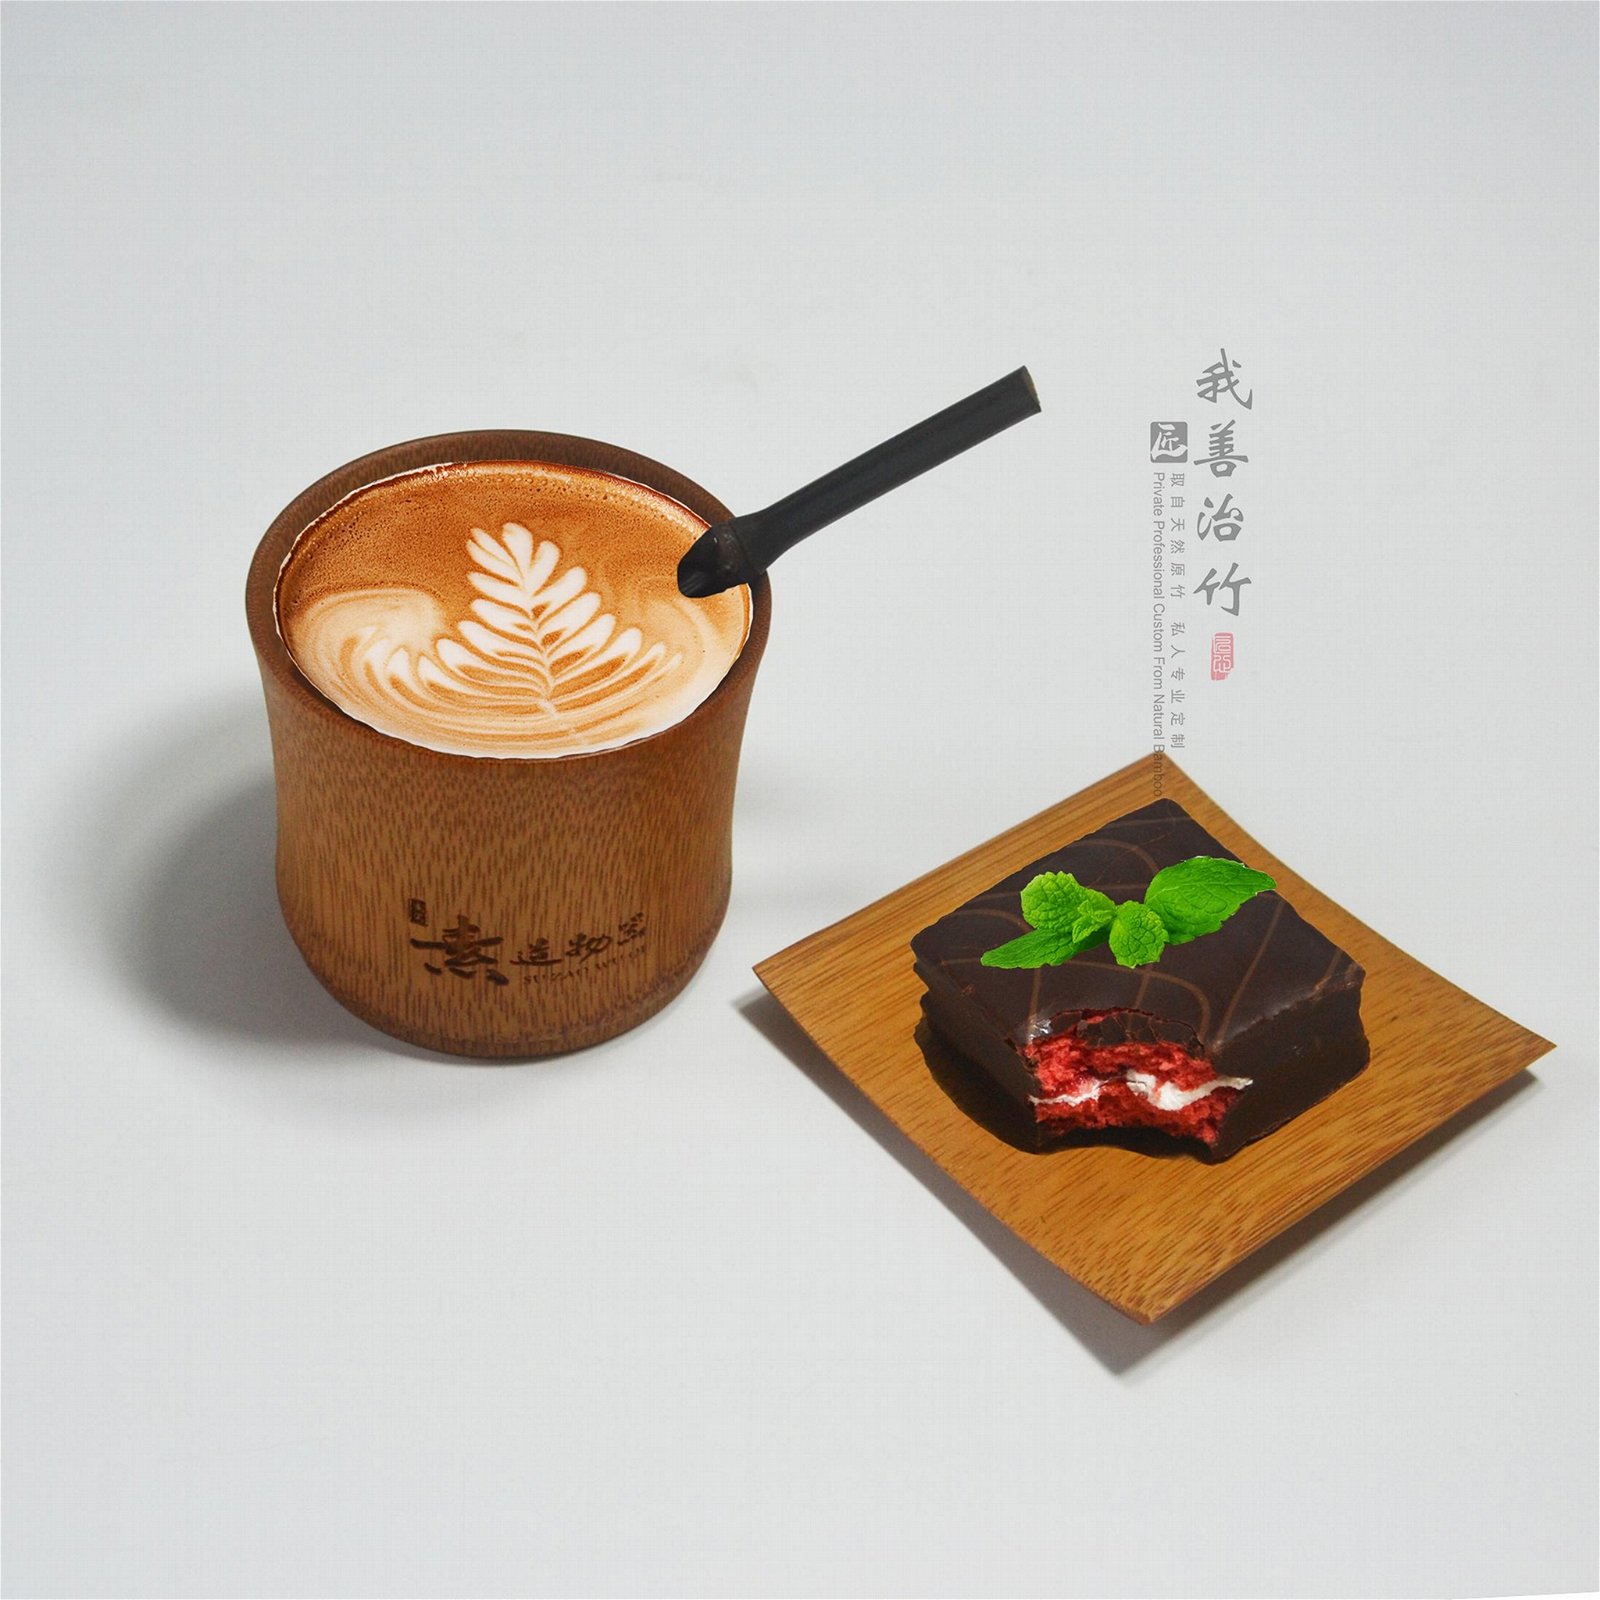 竹子咖啡杯竹质餐具竹制奶茶杯茶杯 5